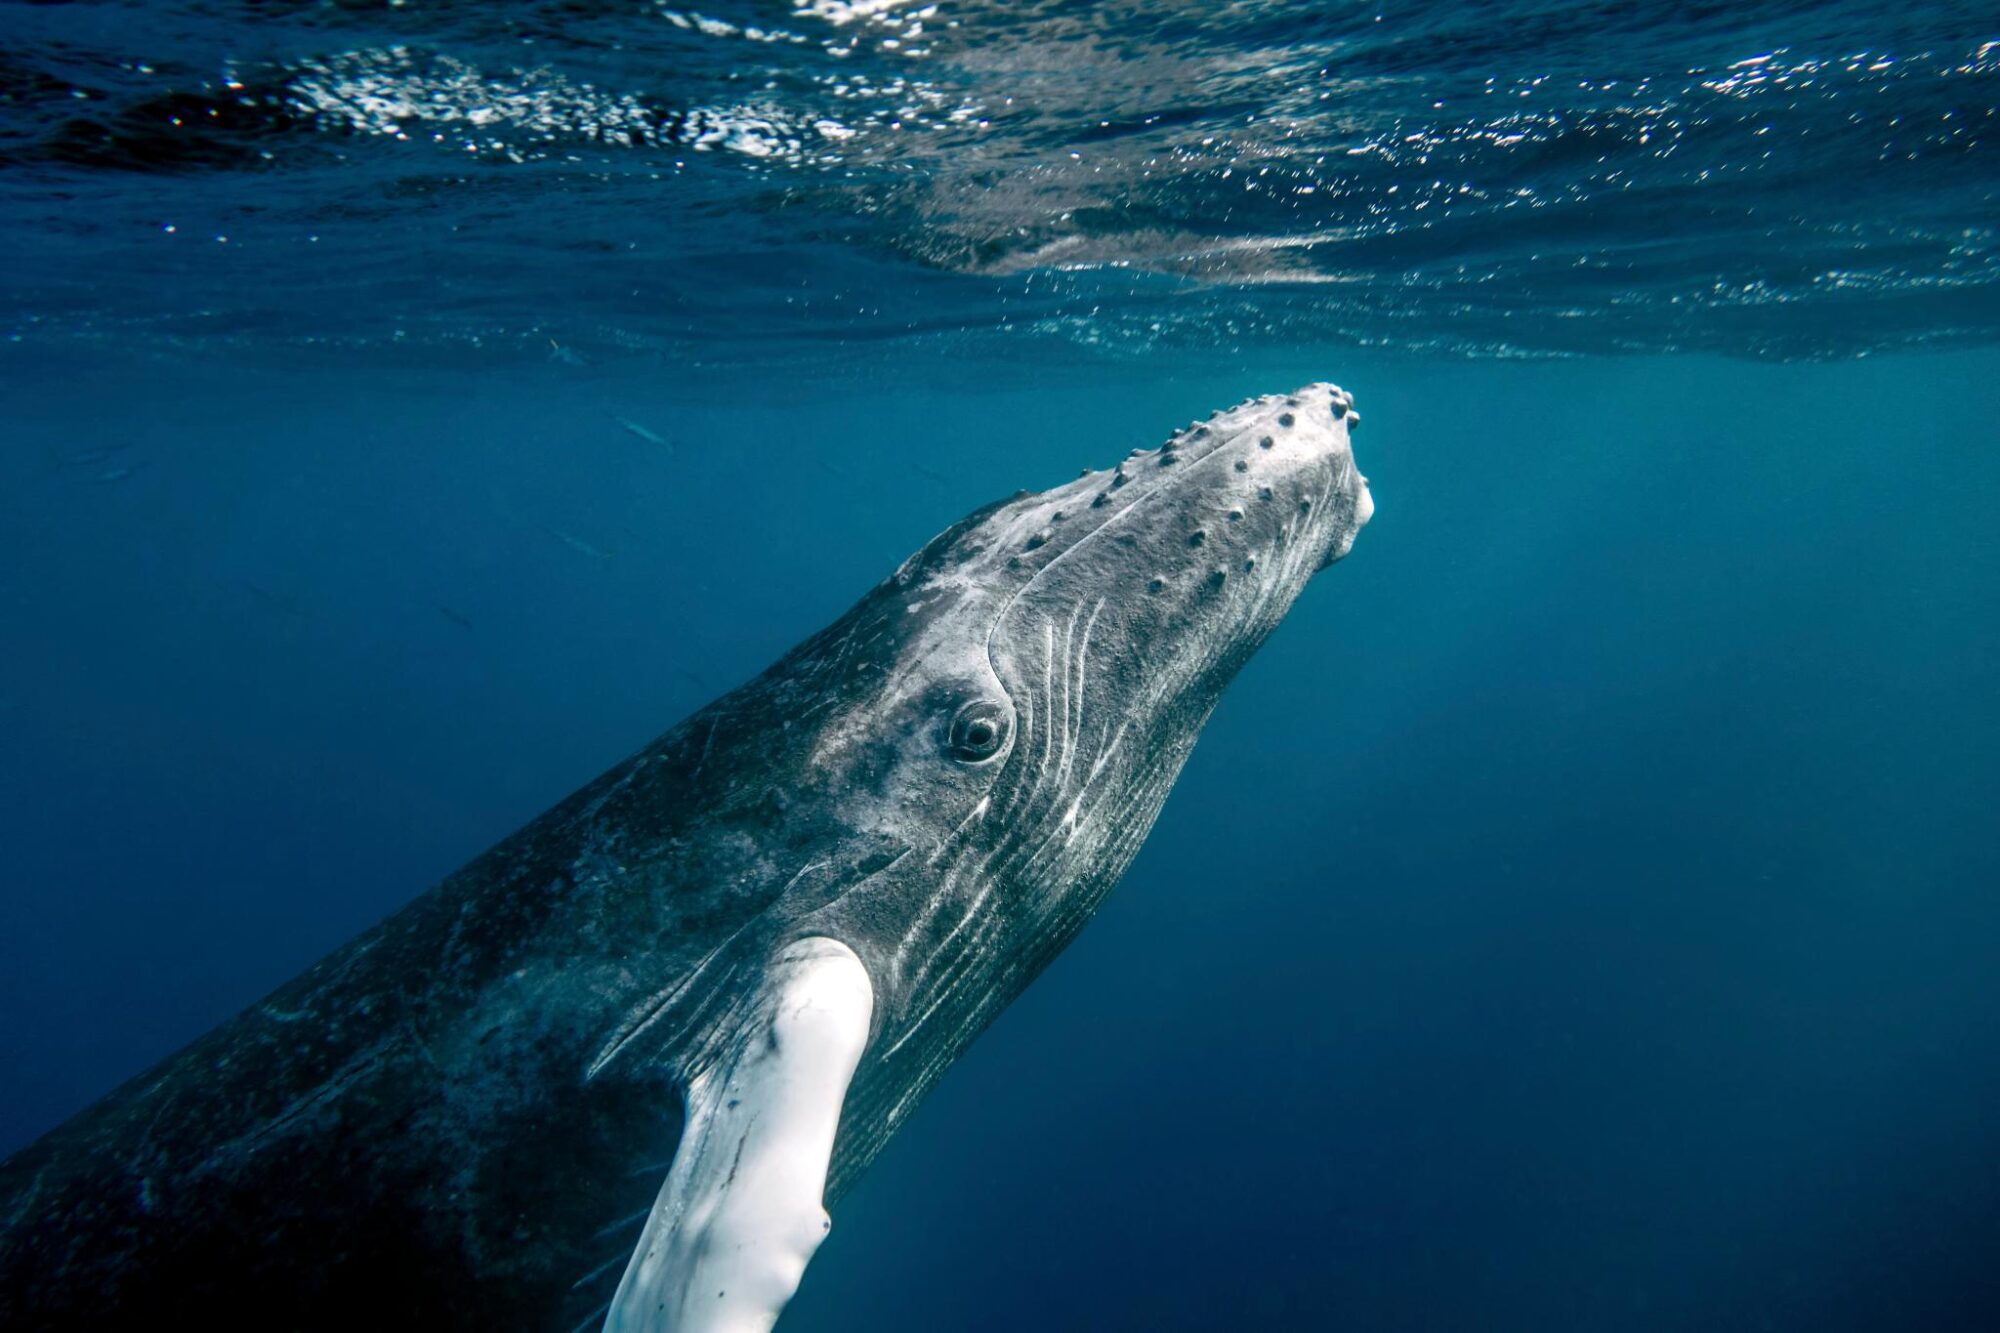 <p>Um tratado poderia auxiliar nos esforços de proteção de espécies migratórias como as baleias, que navegam em alto mar em busca de alimento e companheiros (Imagem: <a href="https://www.flickr.com/photos/cmichel67/">Christopher Michel</a>/<a href="https://www.flickr.com/photos/cmichel67/16508229204/">Flickr </a>CC BY 2.0)</p>